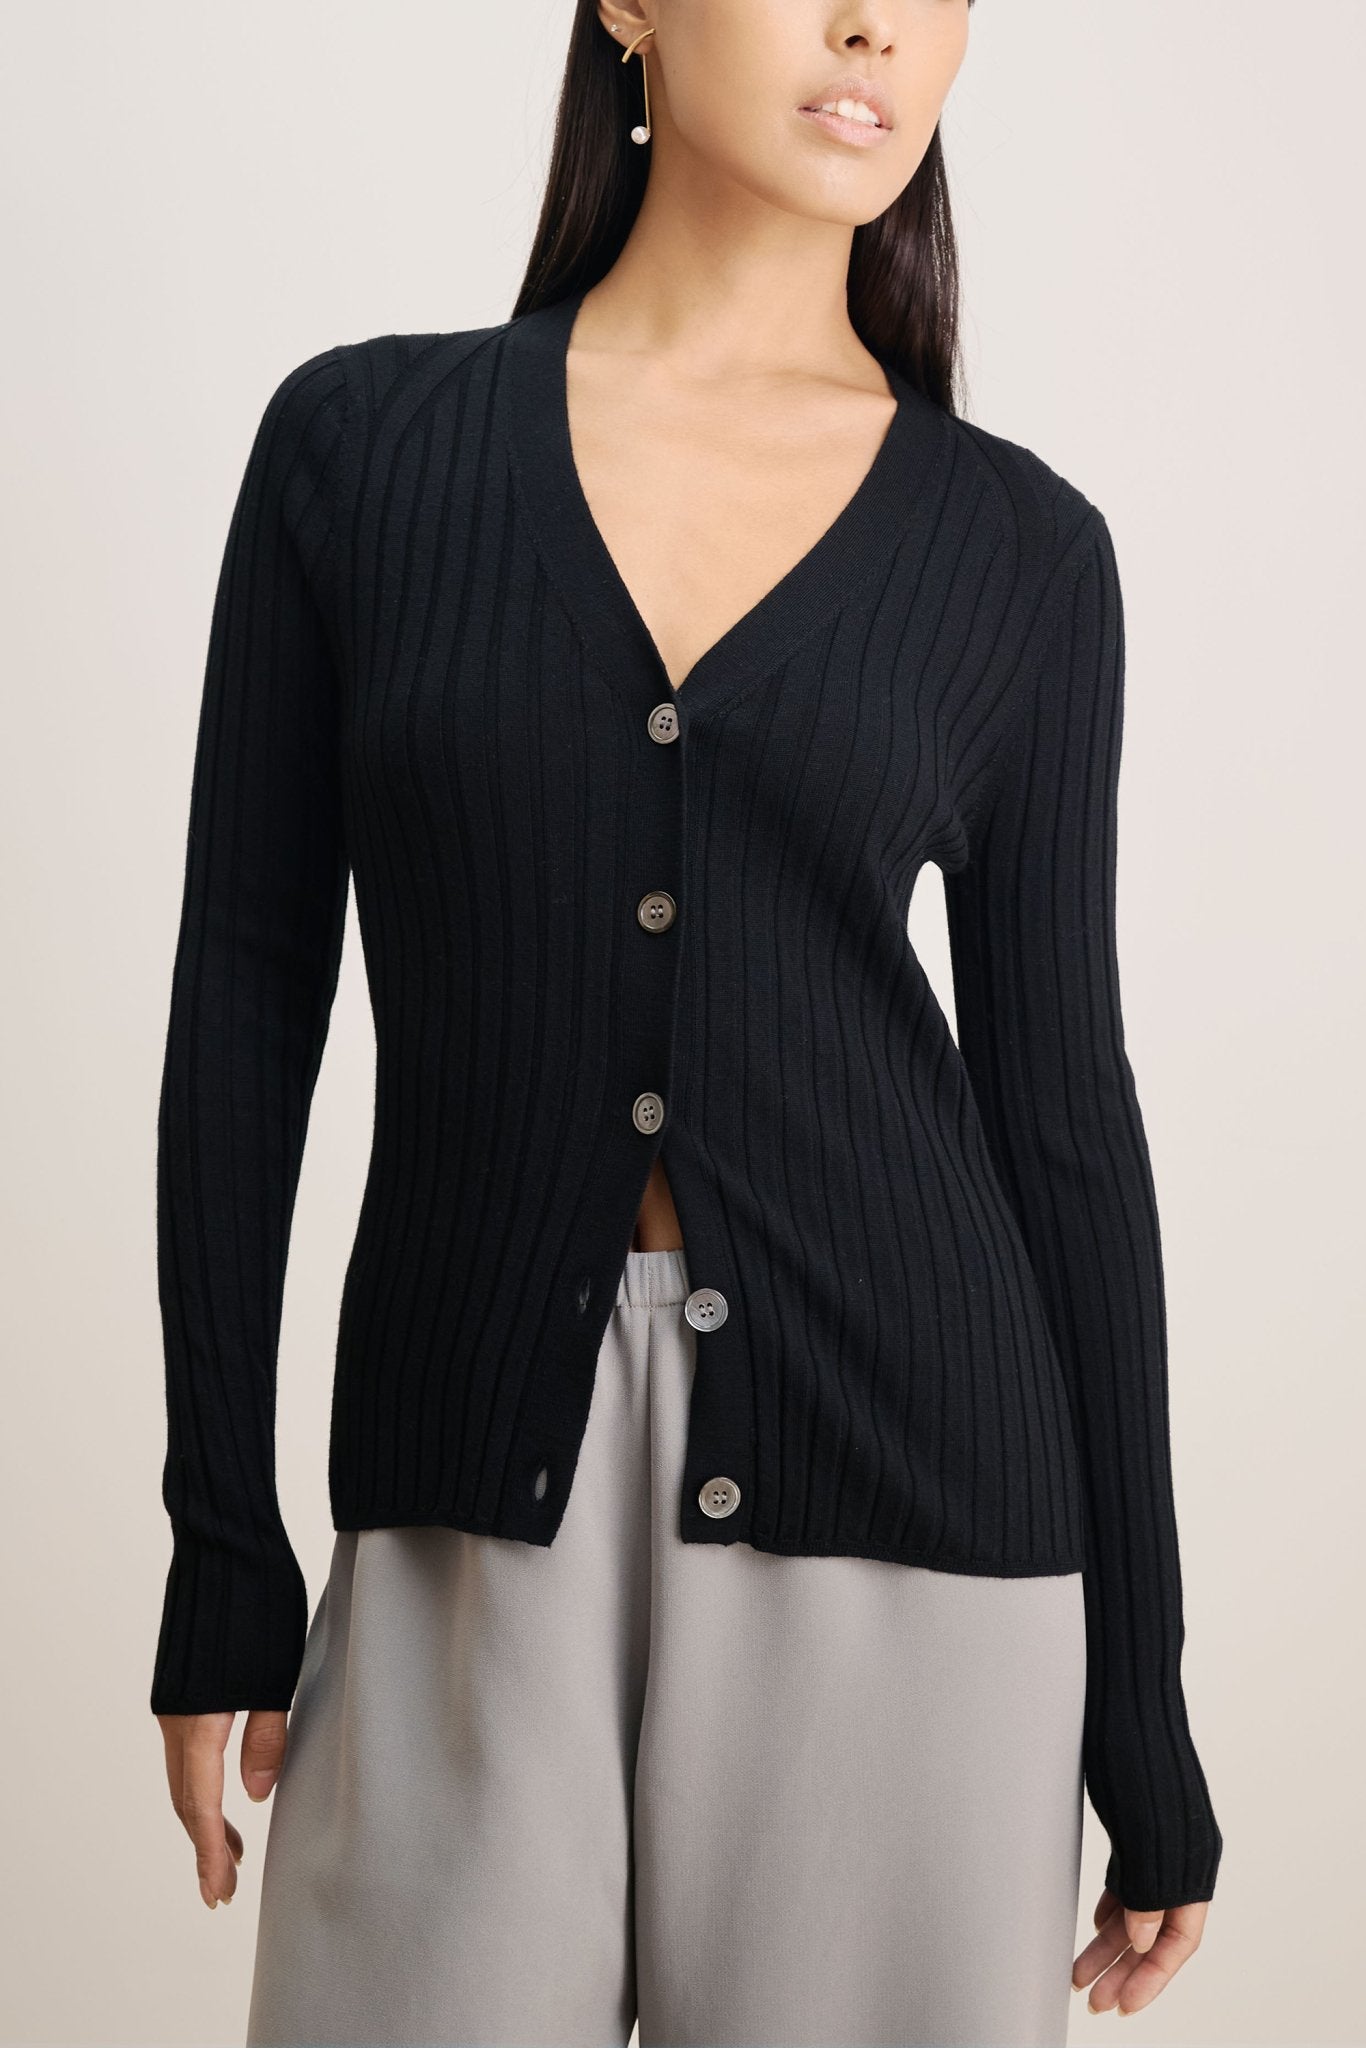 WENDY merino wool slim-fit cardigan (Black) - STELLAM